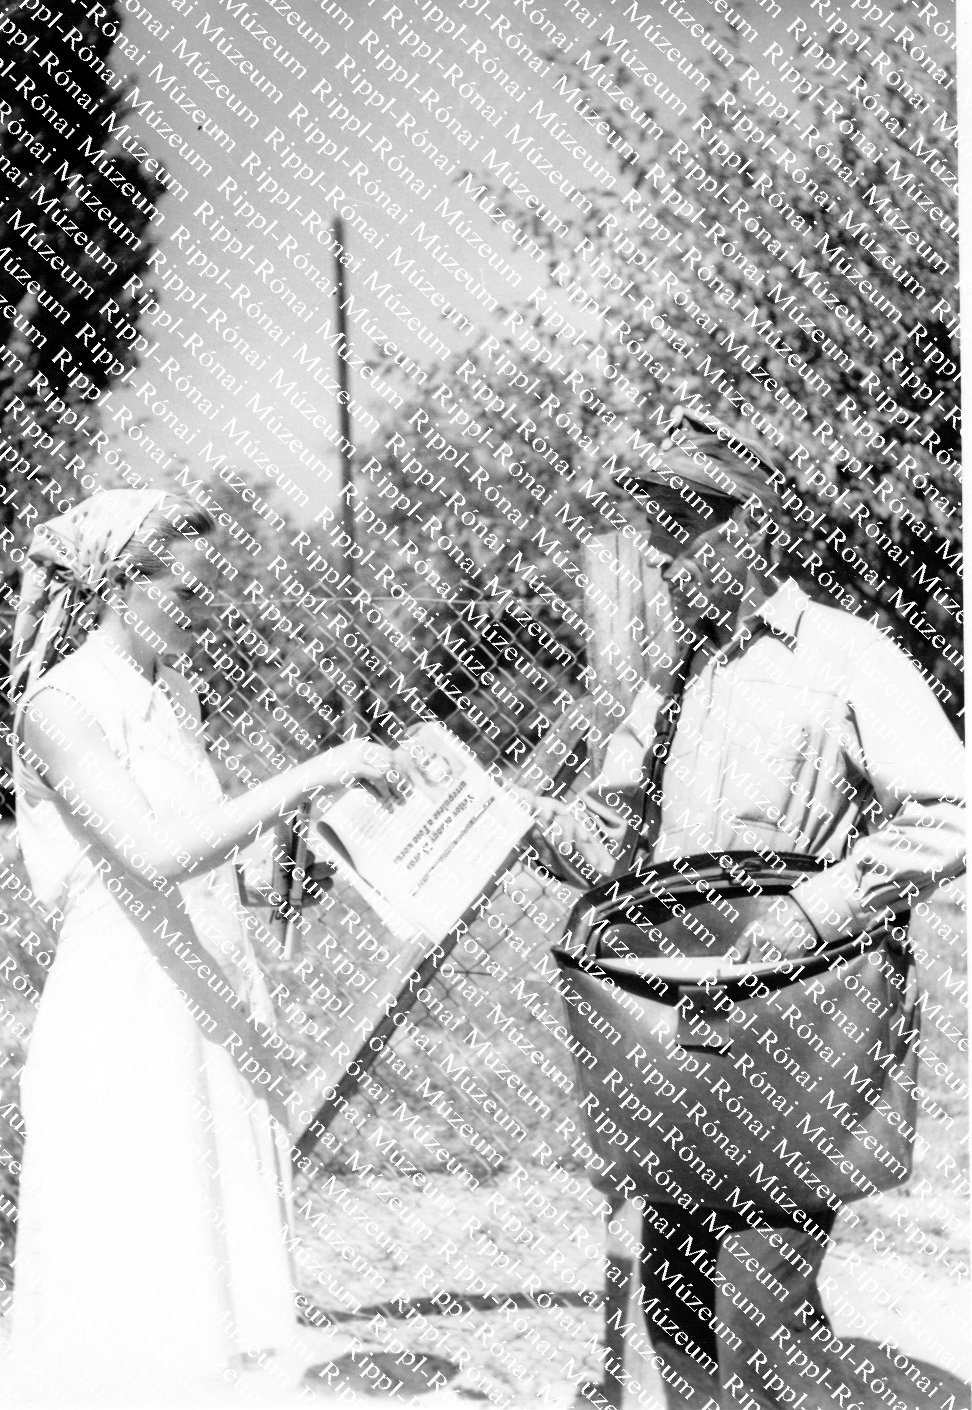 Sós József, darányi postás újságot kézbesít (Rippl-Rónai Múzeum CC BY-NC-SA)